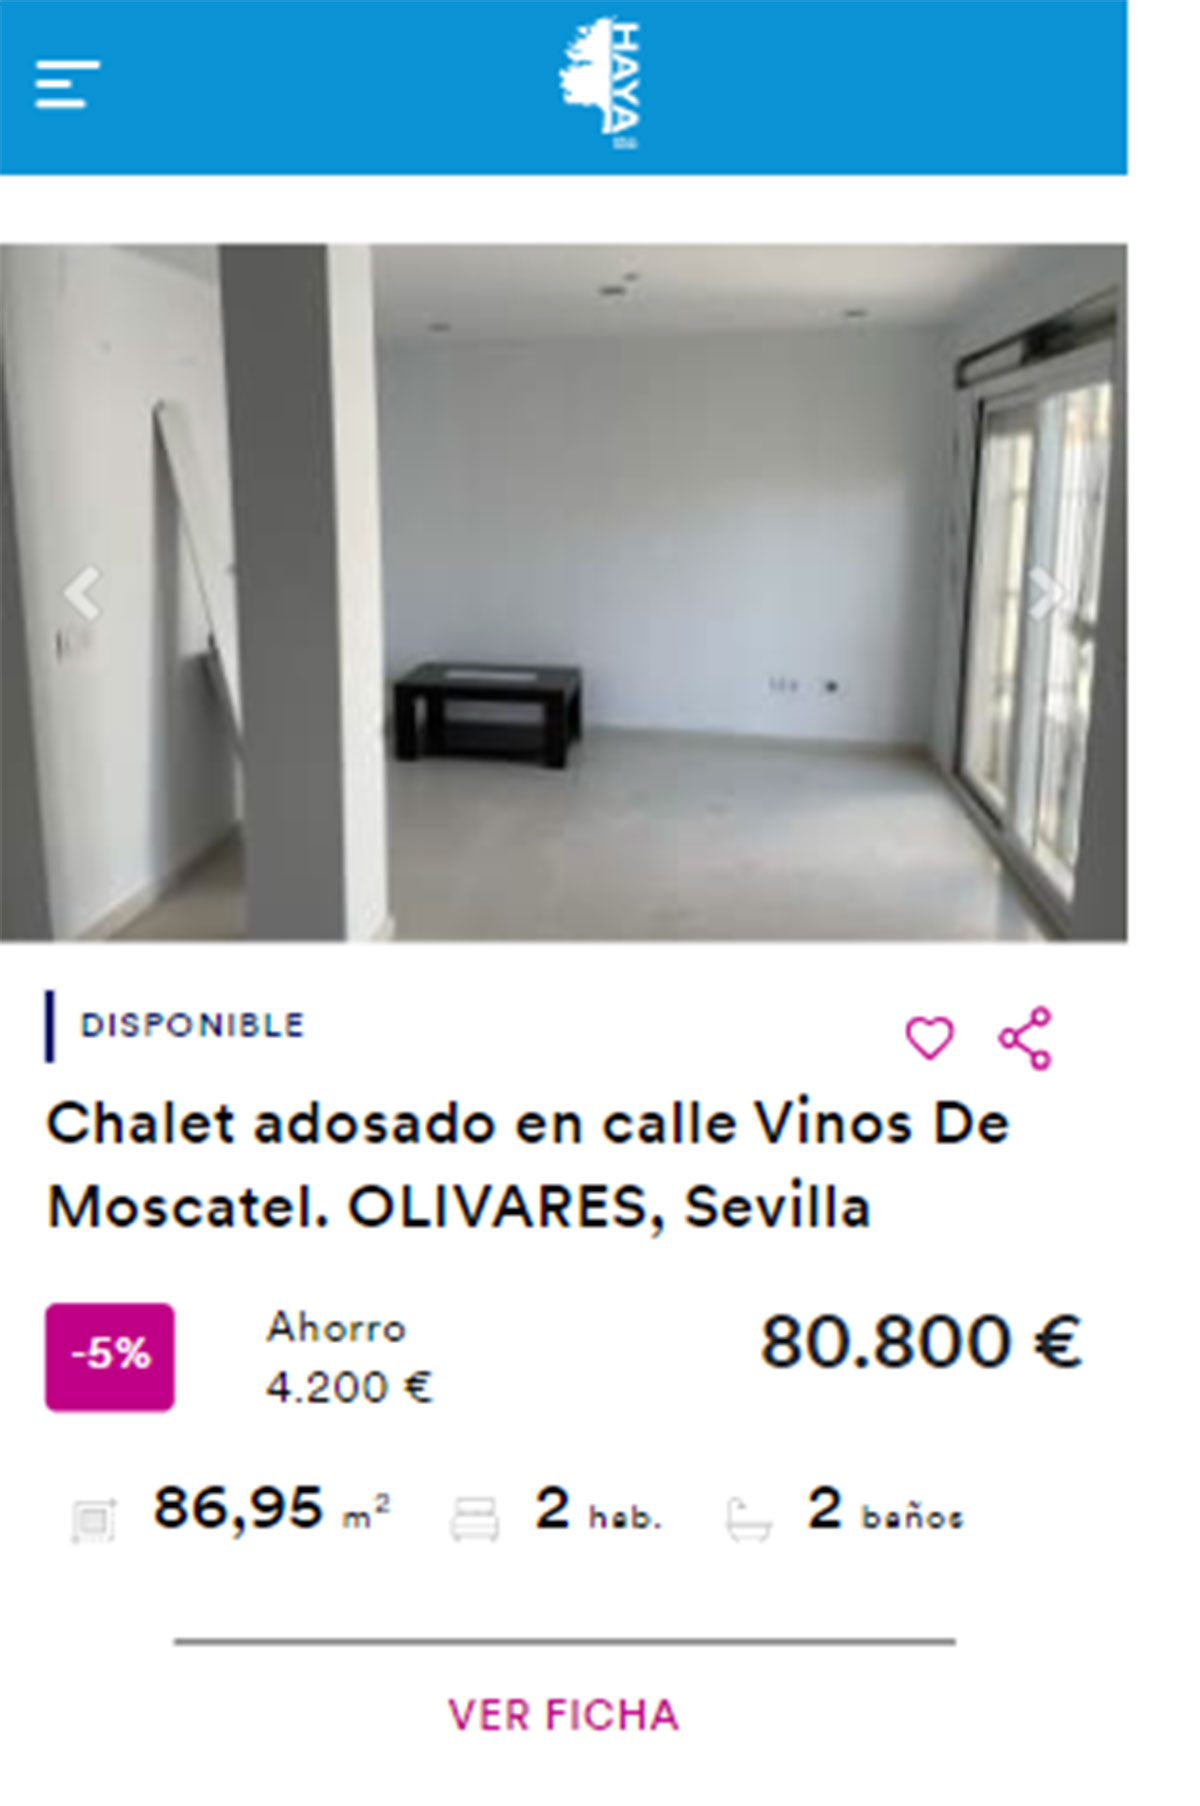 Chalet adosado en venta por 80.000 euros